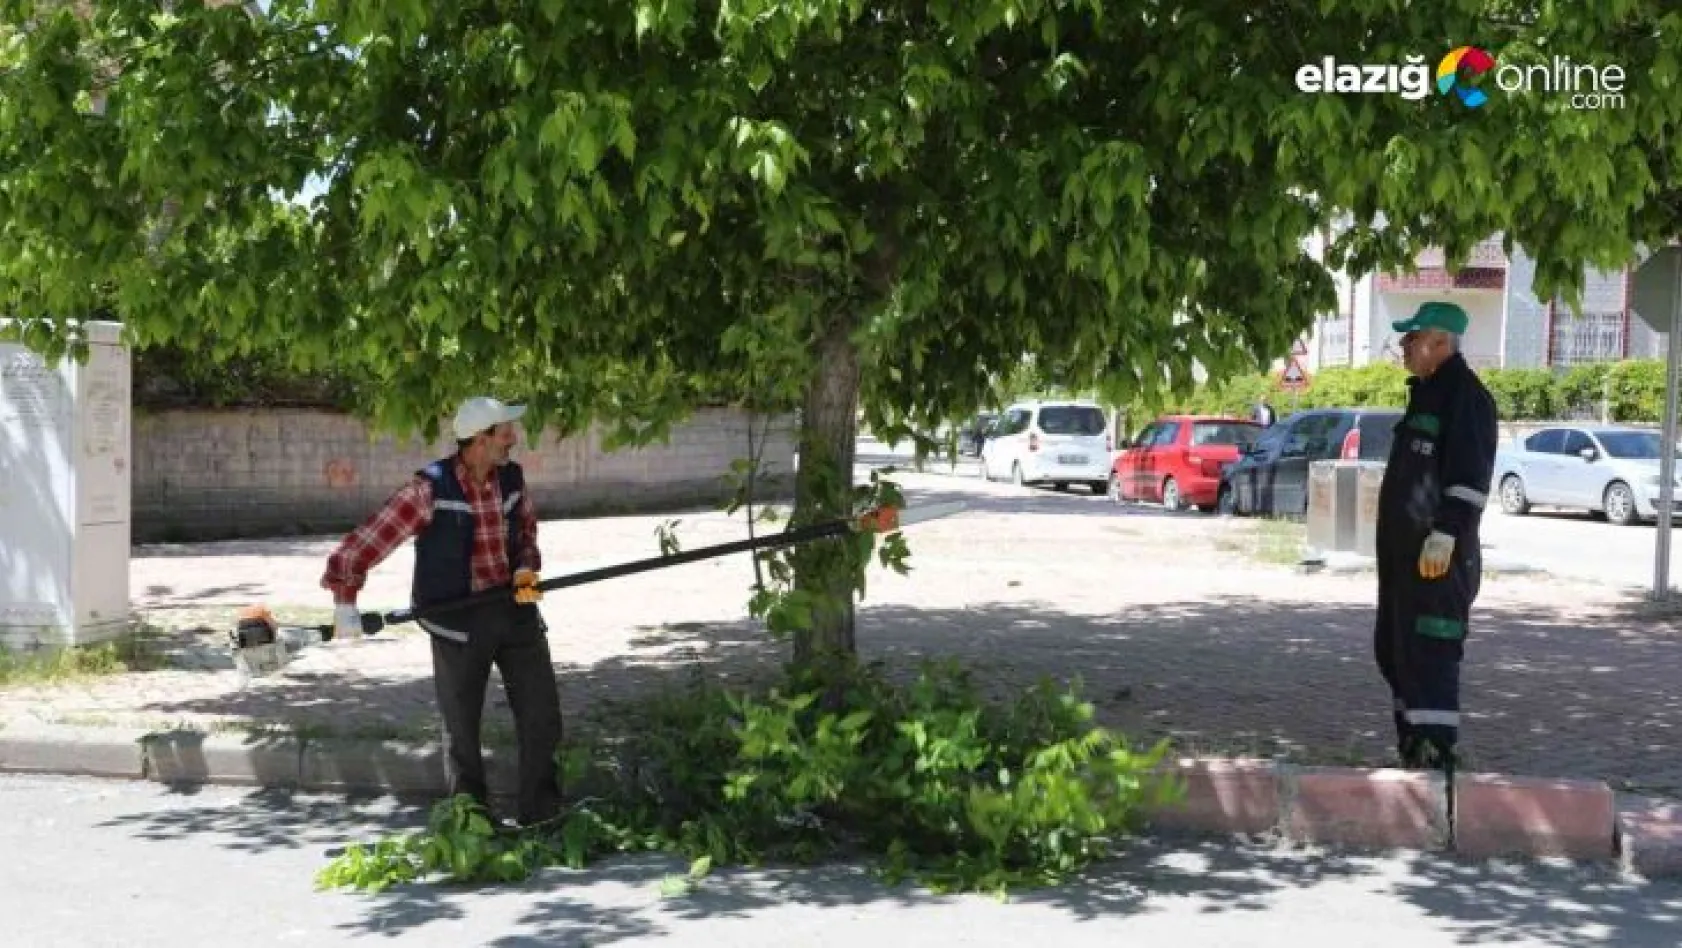 Elazığ Belediyesi şehri yaz mevsimine hazırlıyor